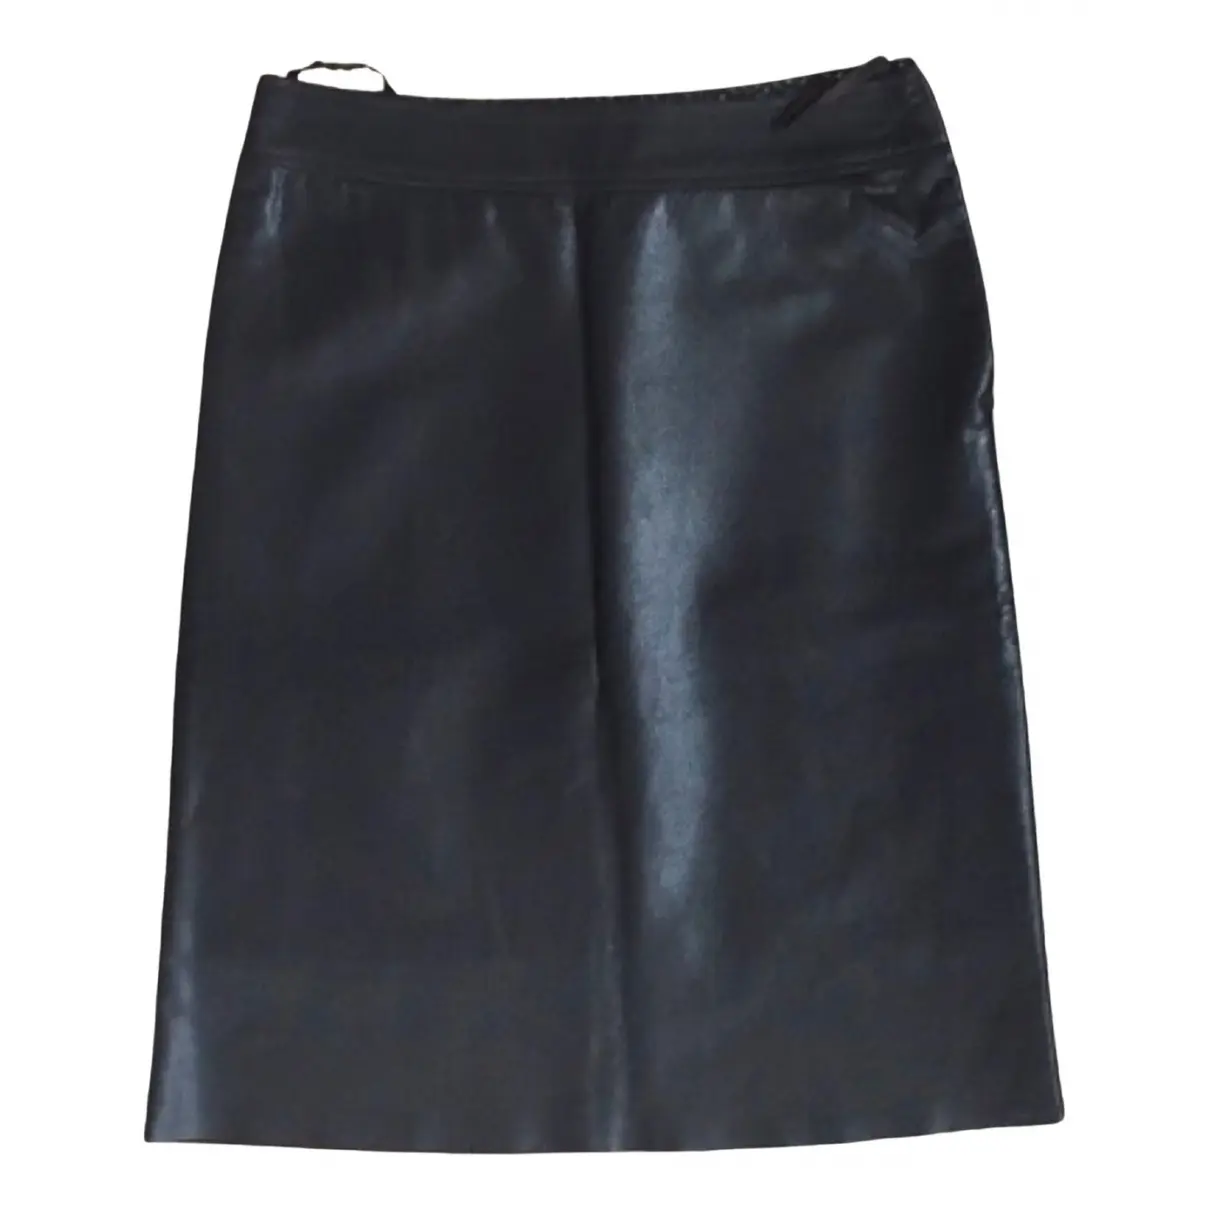 Leather skirt KRISTINATI